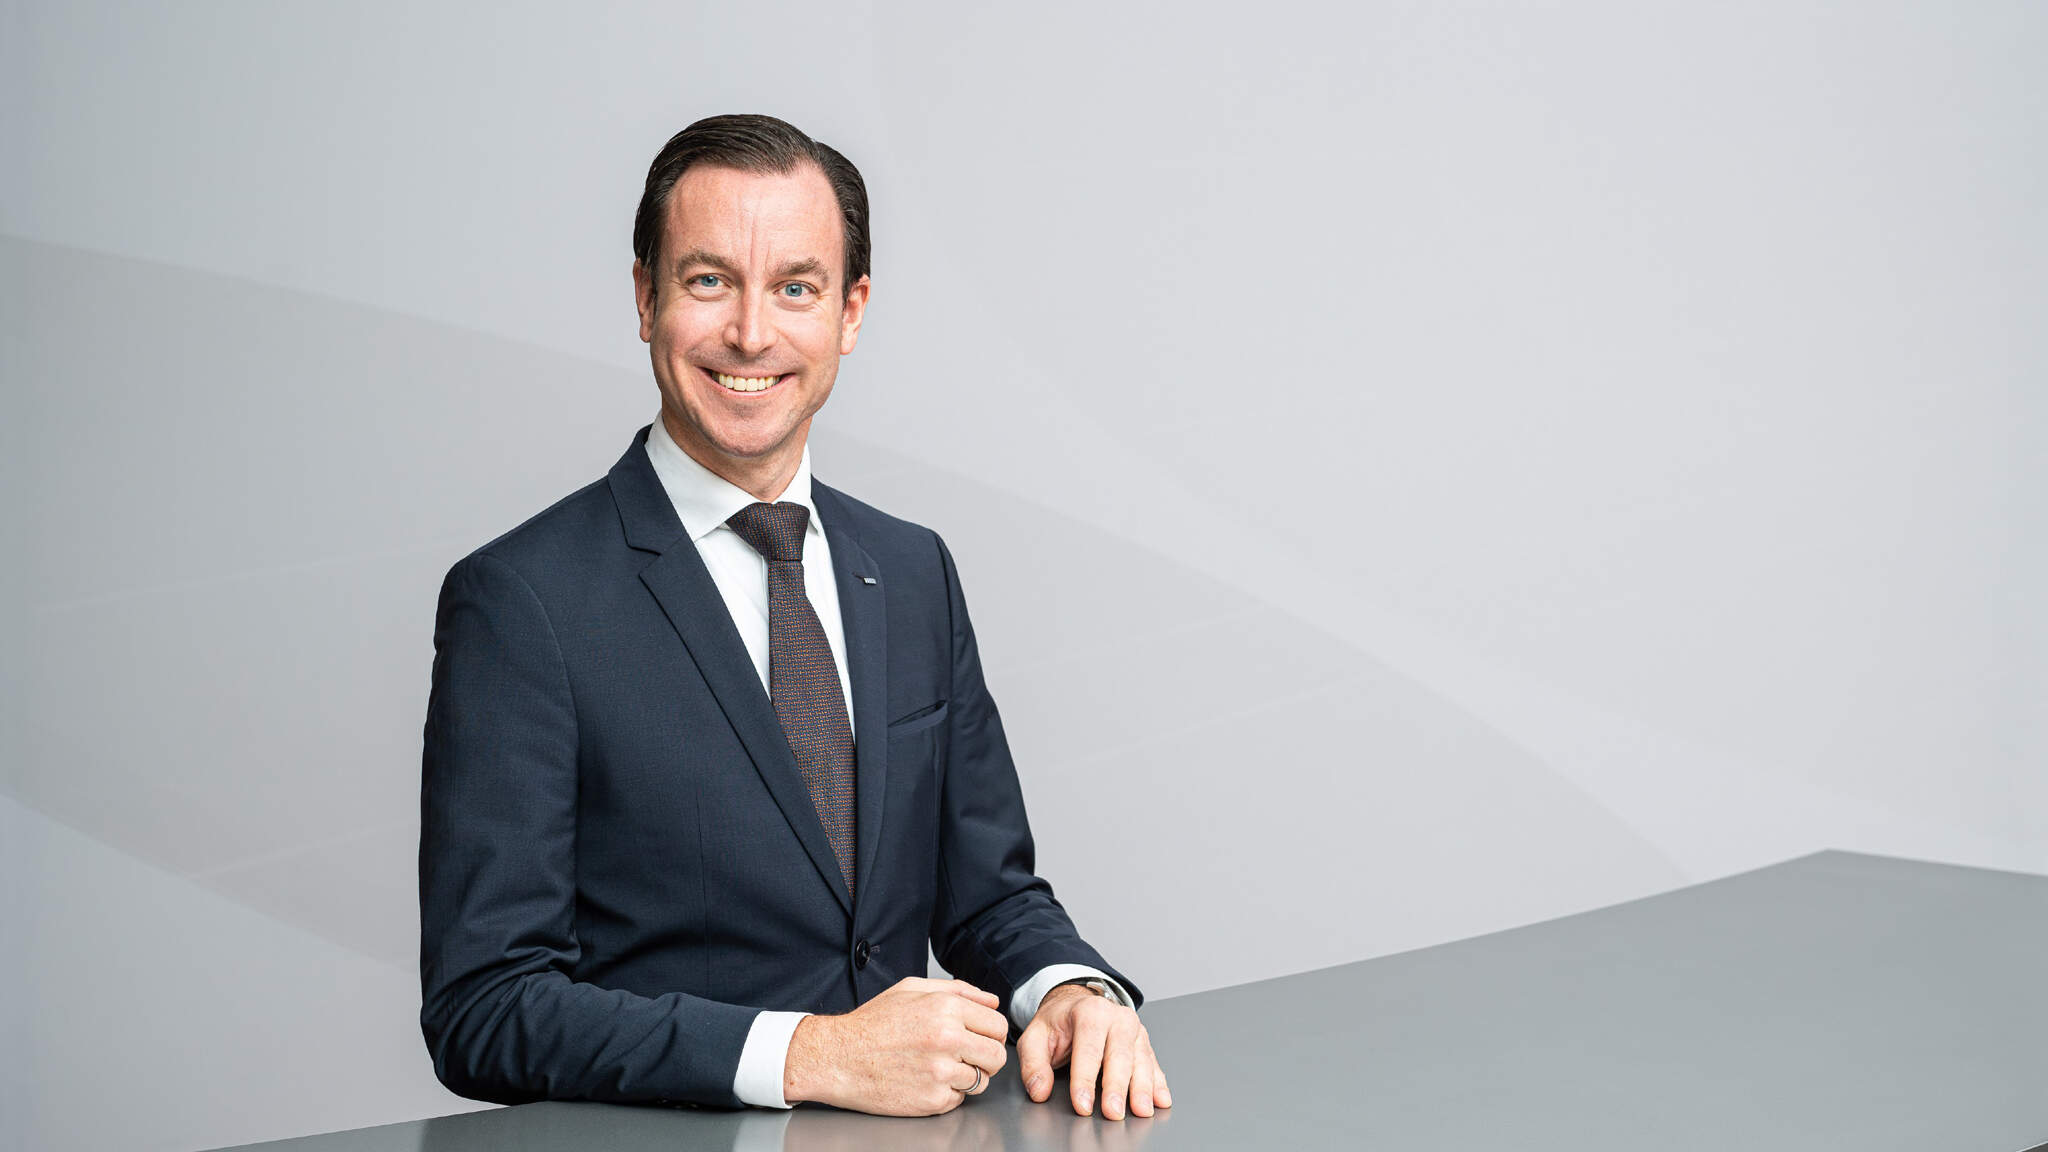 Dr. Tobias Burger (46) újév óta a DACHSER Air & Sea Logistics üzletágának ügyvezető igazgatója (COO) és igazgatósági tagja